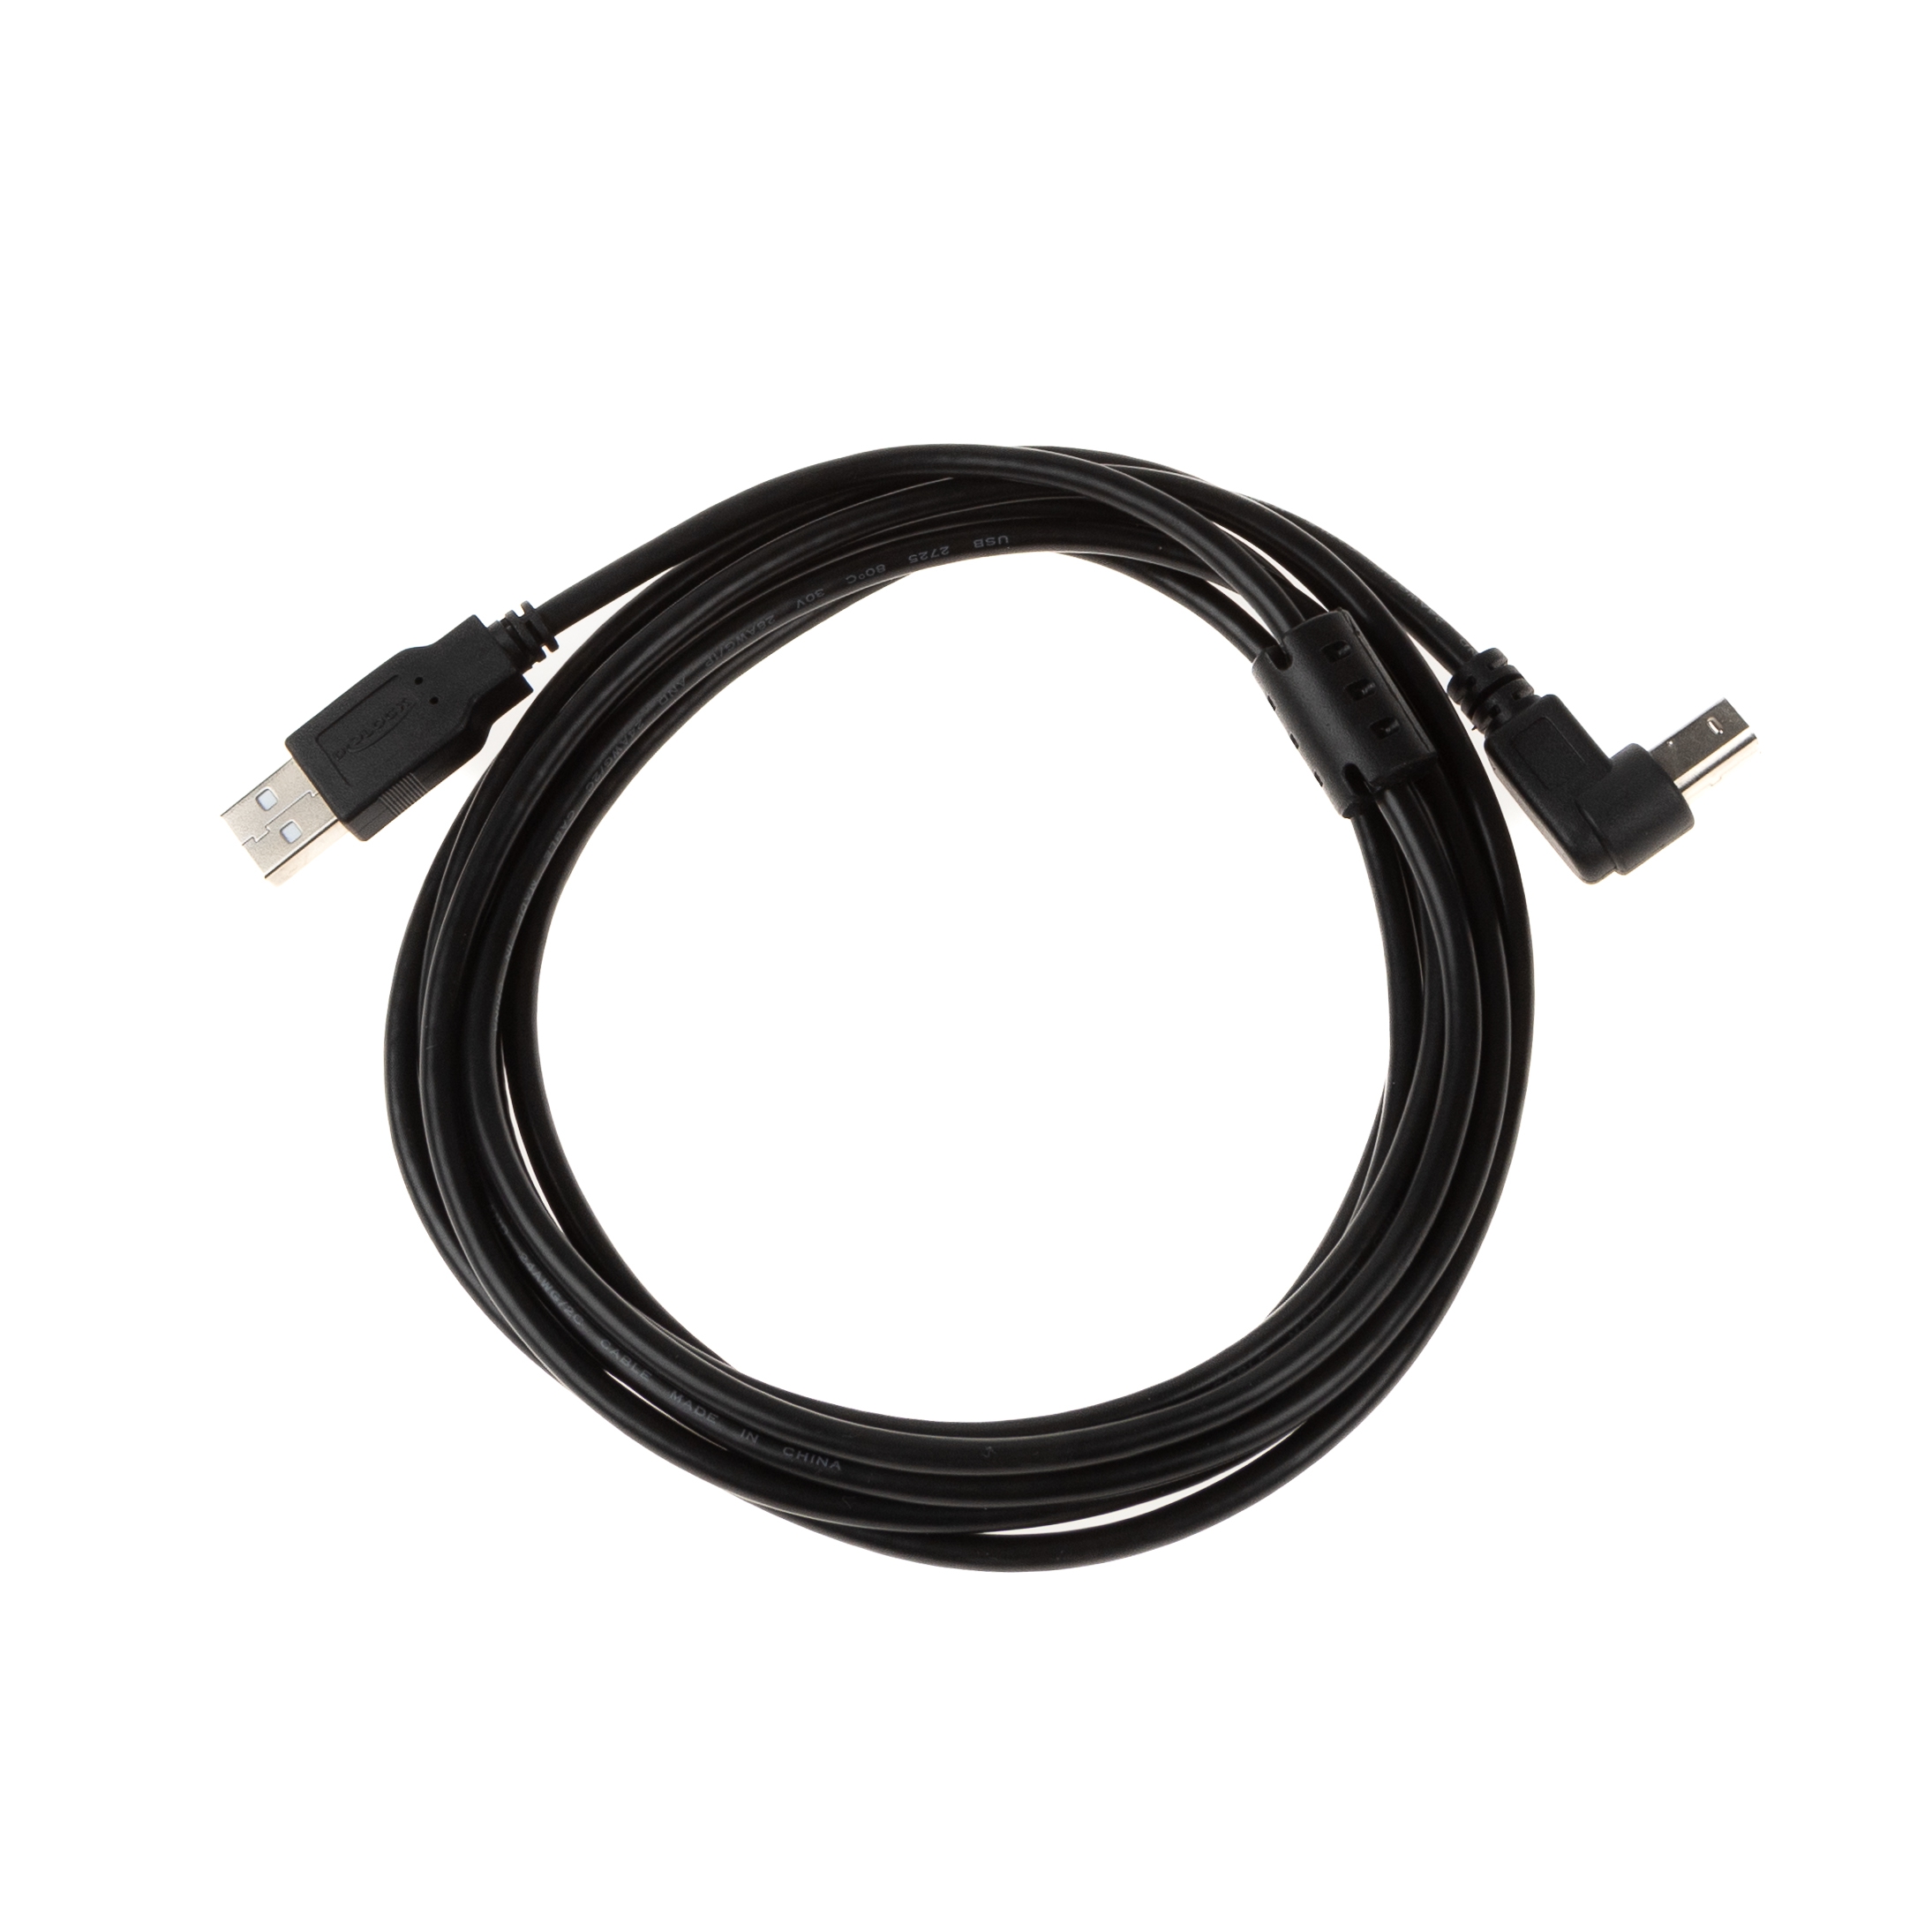 USB 2.0 Kabel mit B-Winkelstecker (90° NACH UNTEN) und Ferritkern 3m